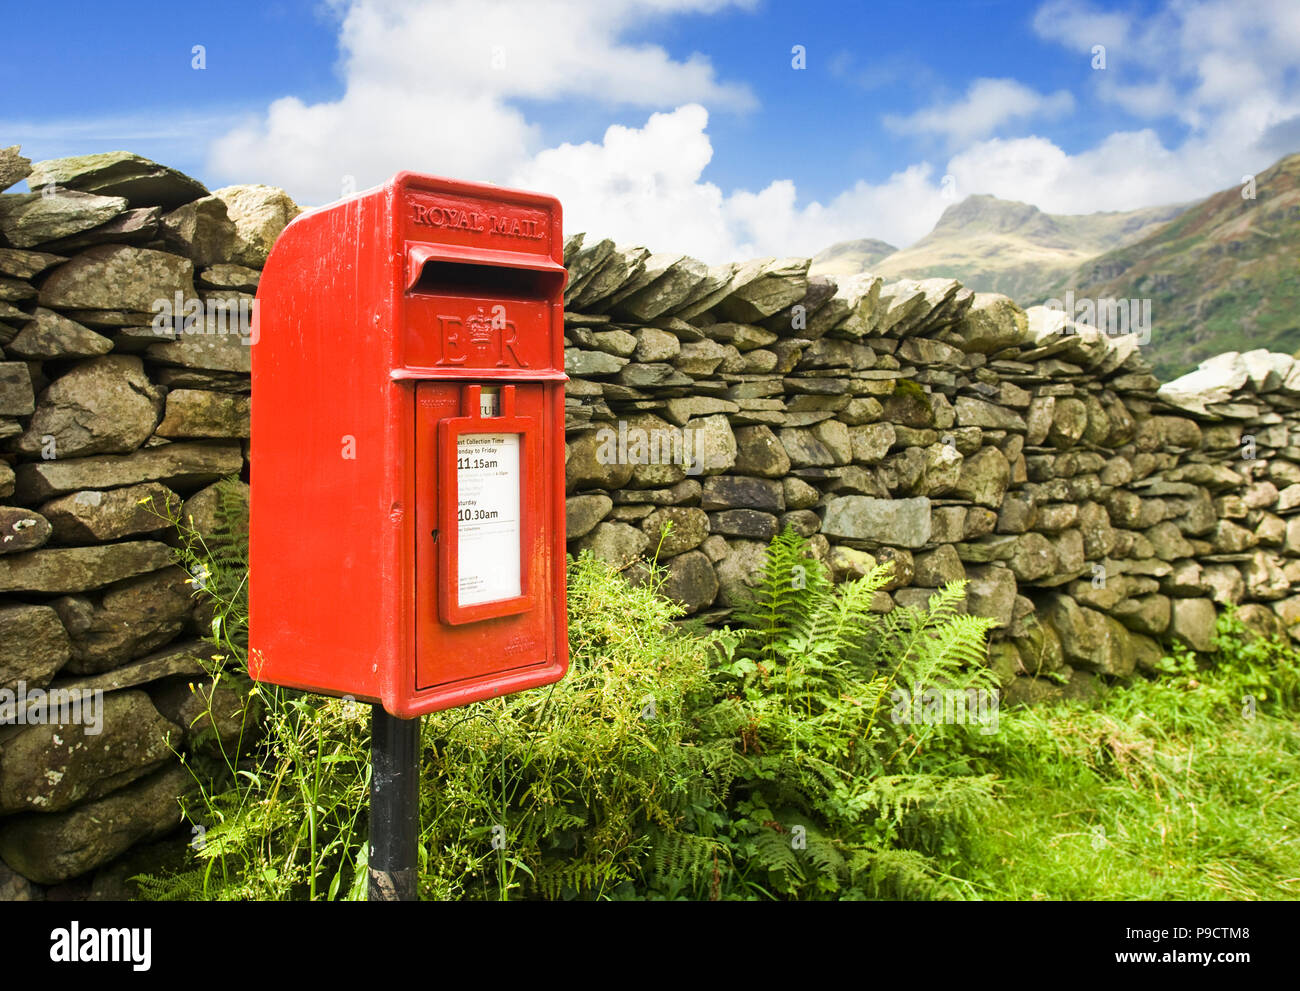 Royal Mail rouge Rural lettre post fort et mur en pierre sèche dans une partie reculée du Parc National de Lake District, Cumbria, England, UK rural Banque D'Images